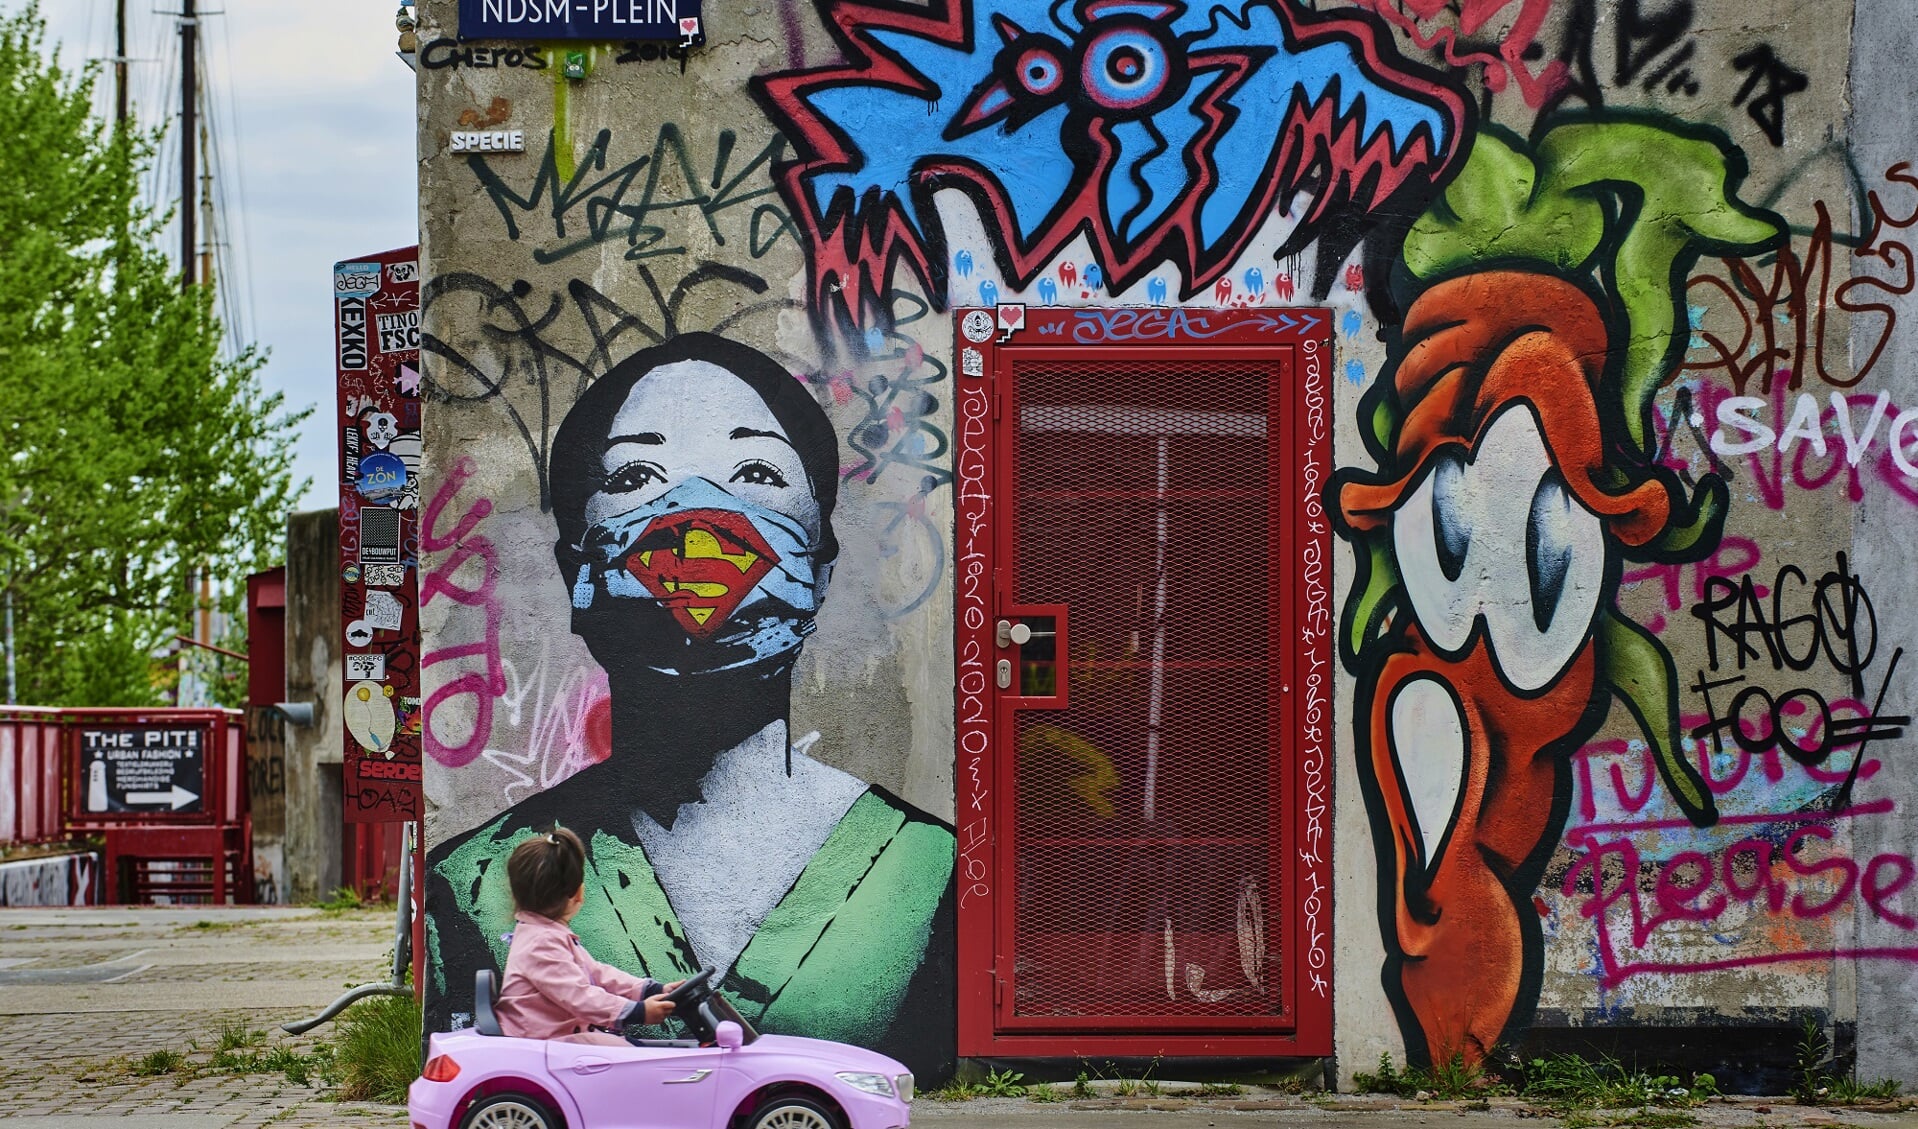 Graffitti art gemaakt door FAKE van een verpleegster op het NDSM plein in Amsterdam. Een klein meisje kijkt toe.